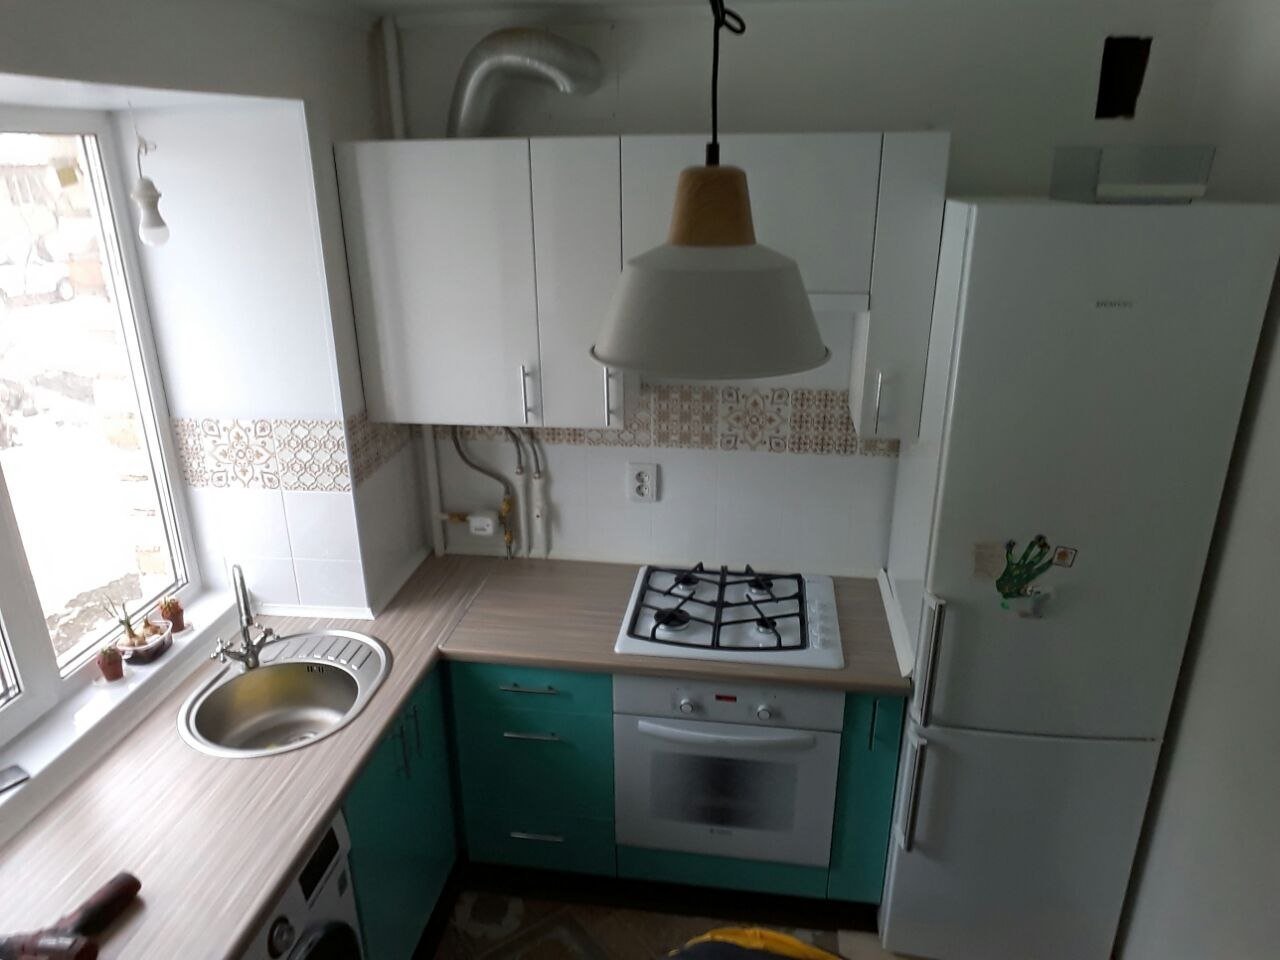 Кухни в хрущевке с холодильником и газовой плитой фото